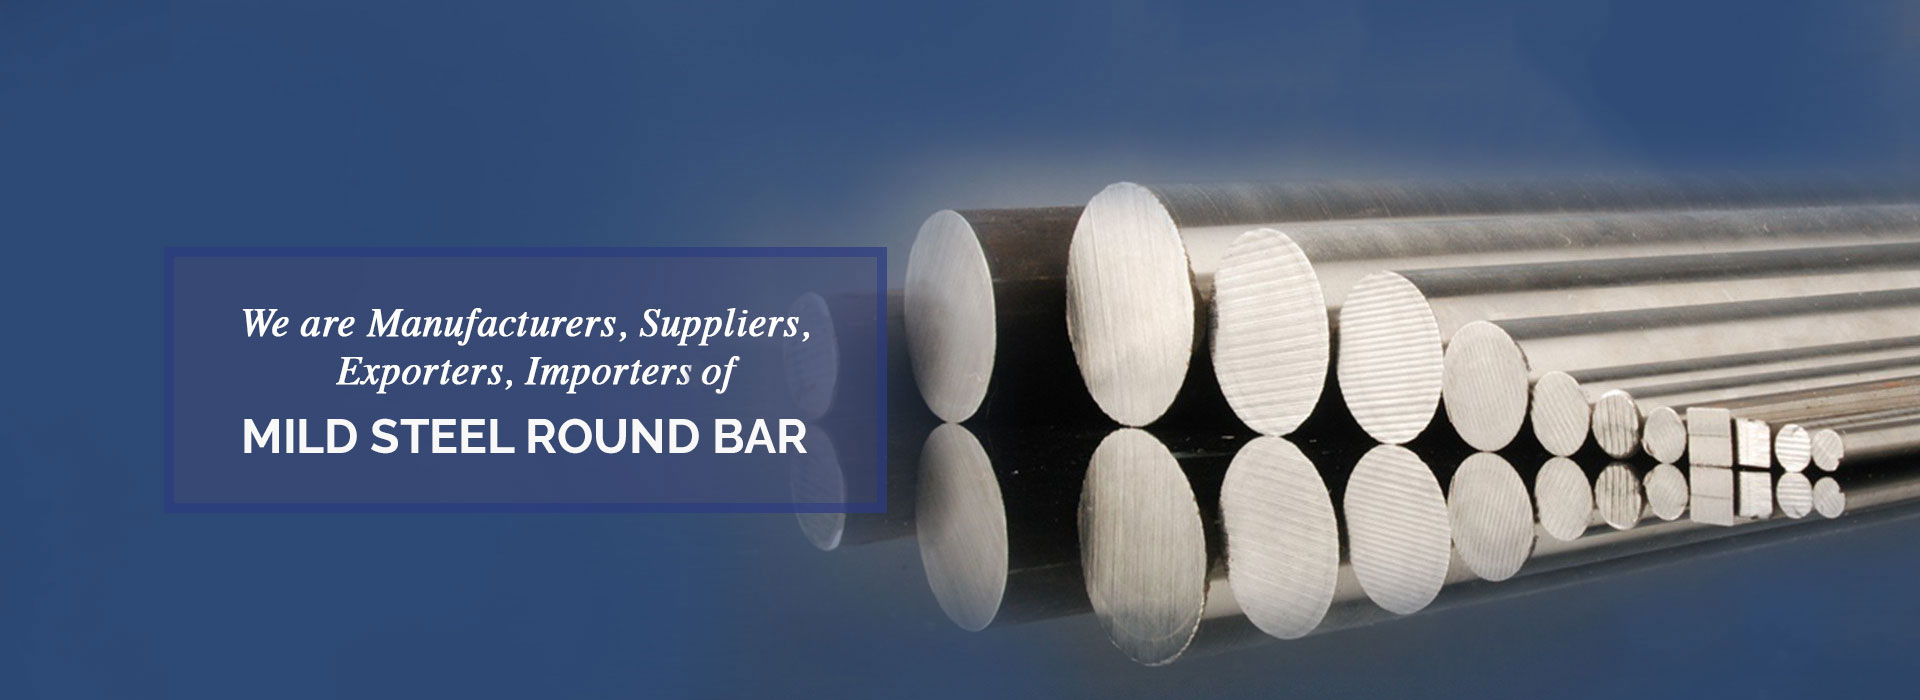 Mild Steel Round Bar Manufacturers in Korea